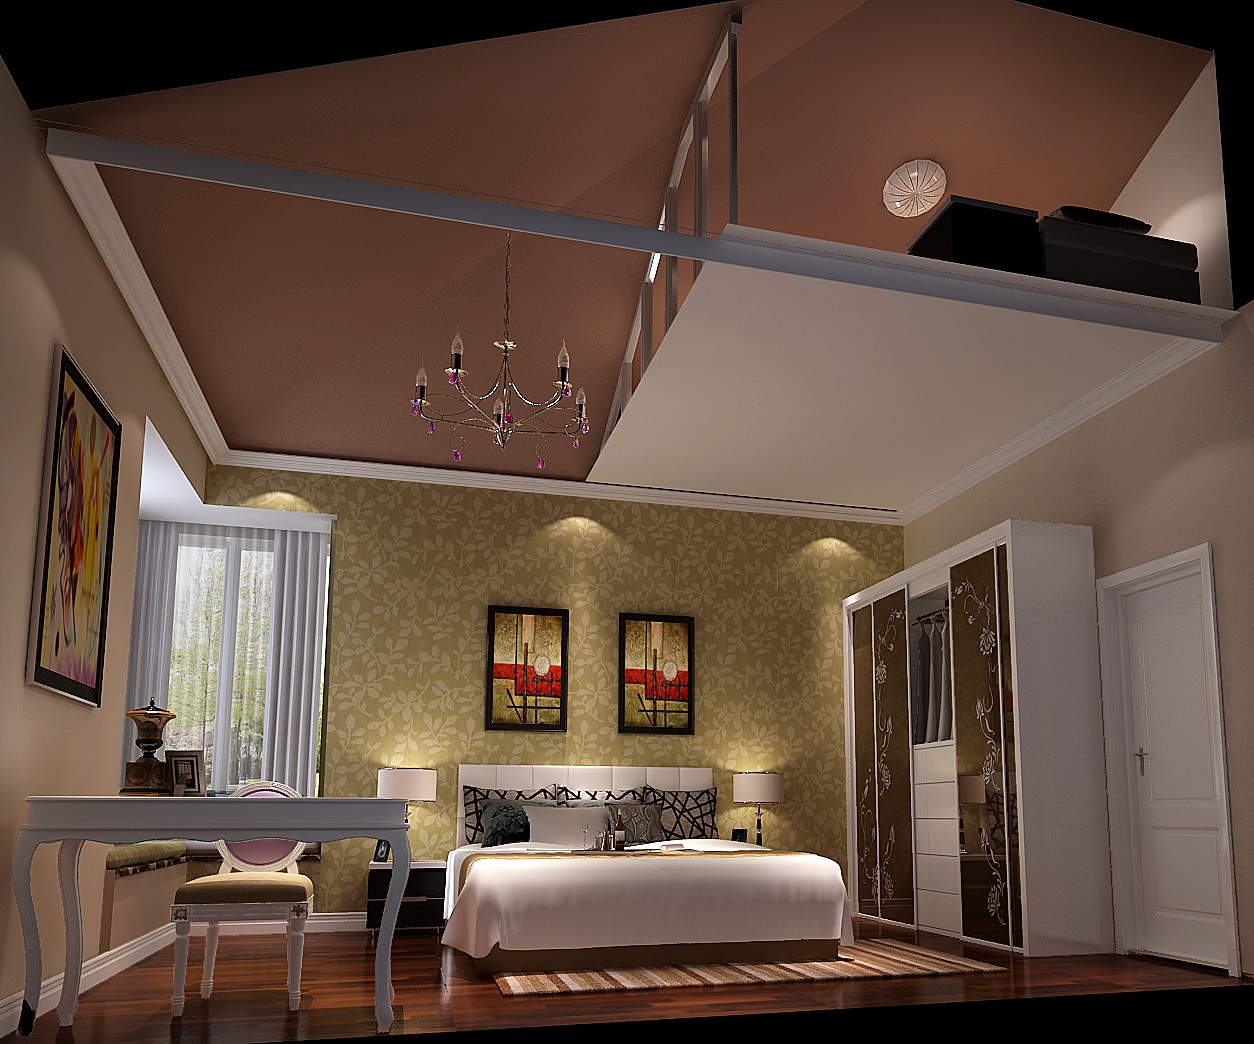 二居 简约 公寓 改装 卧室图片来自高度国际装饰宋增会在正源尚风尚水70平米简约风格改装的分享